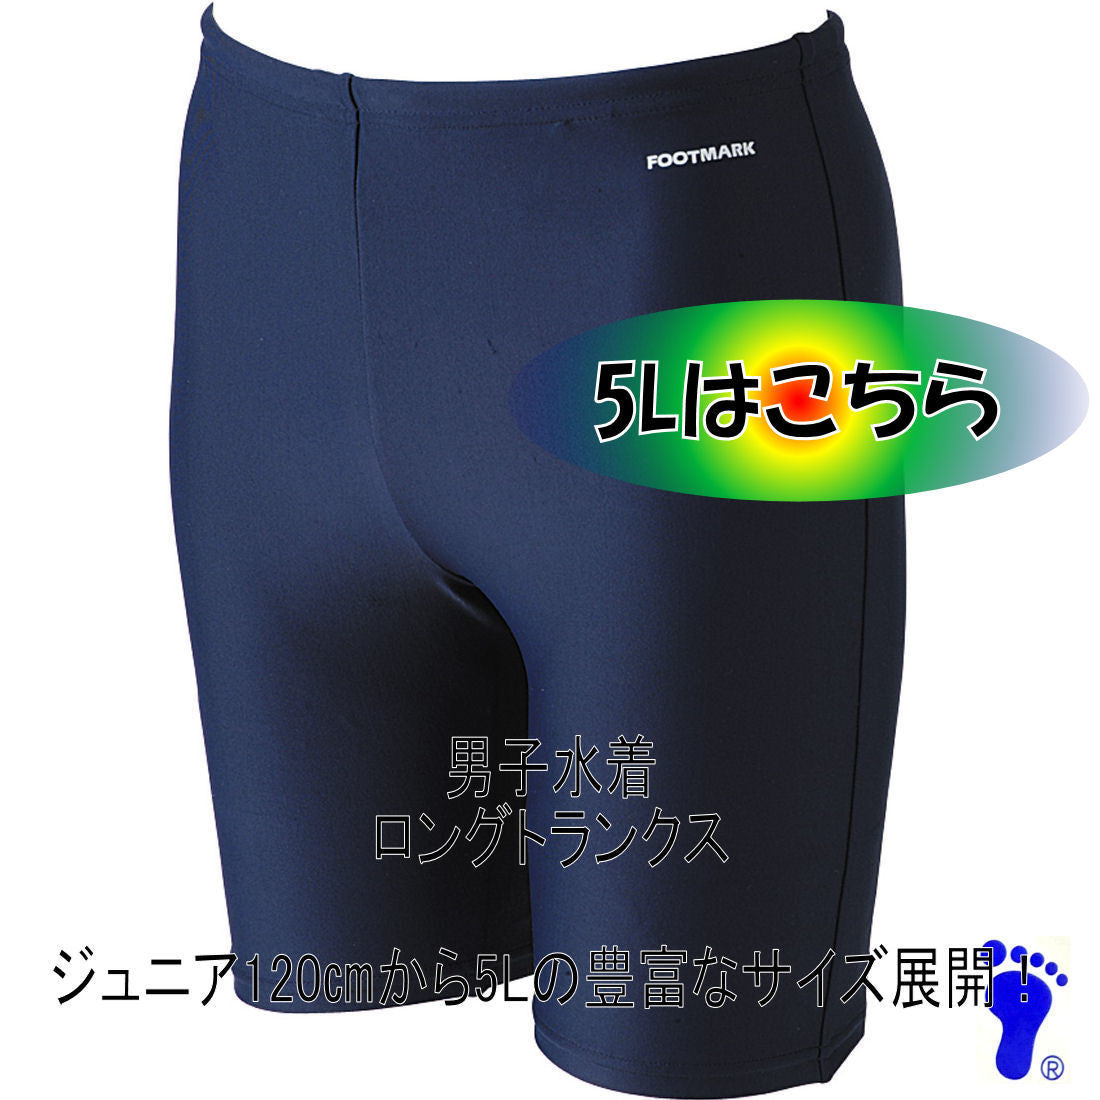 【フットマーク】ロングトランクス 5Lサイズ ネイビー 紺 競泳型 男子男児用